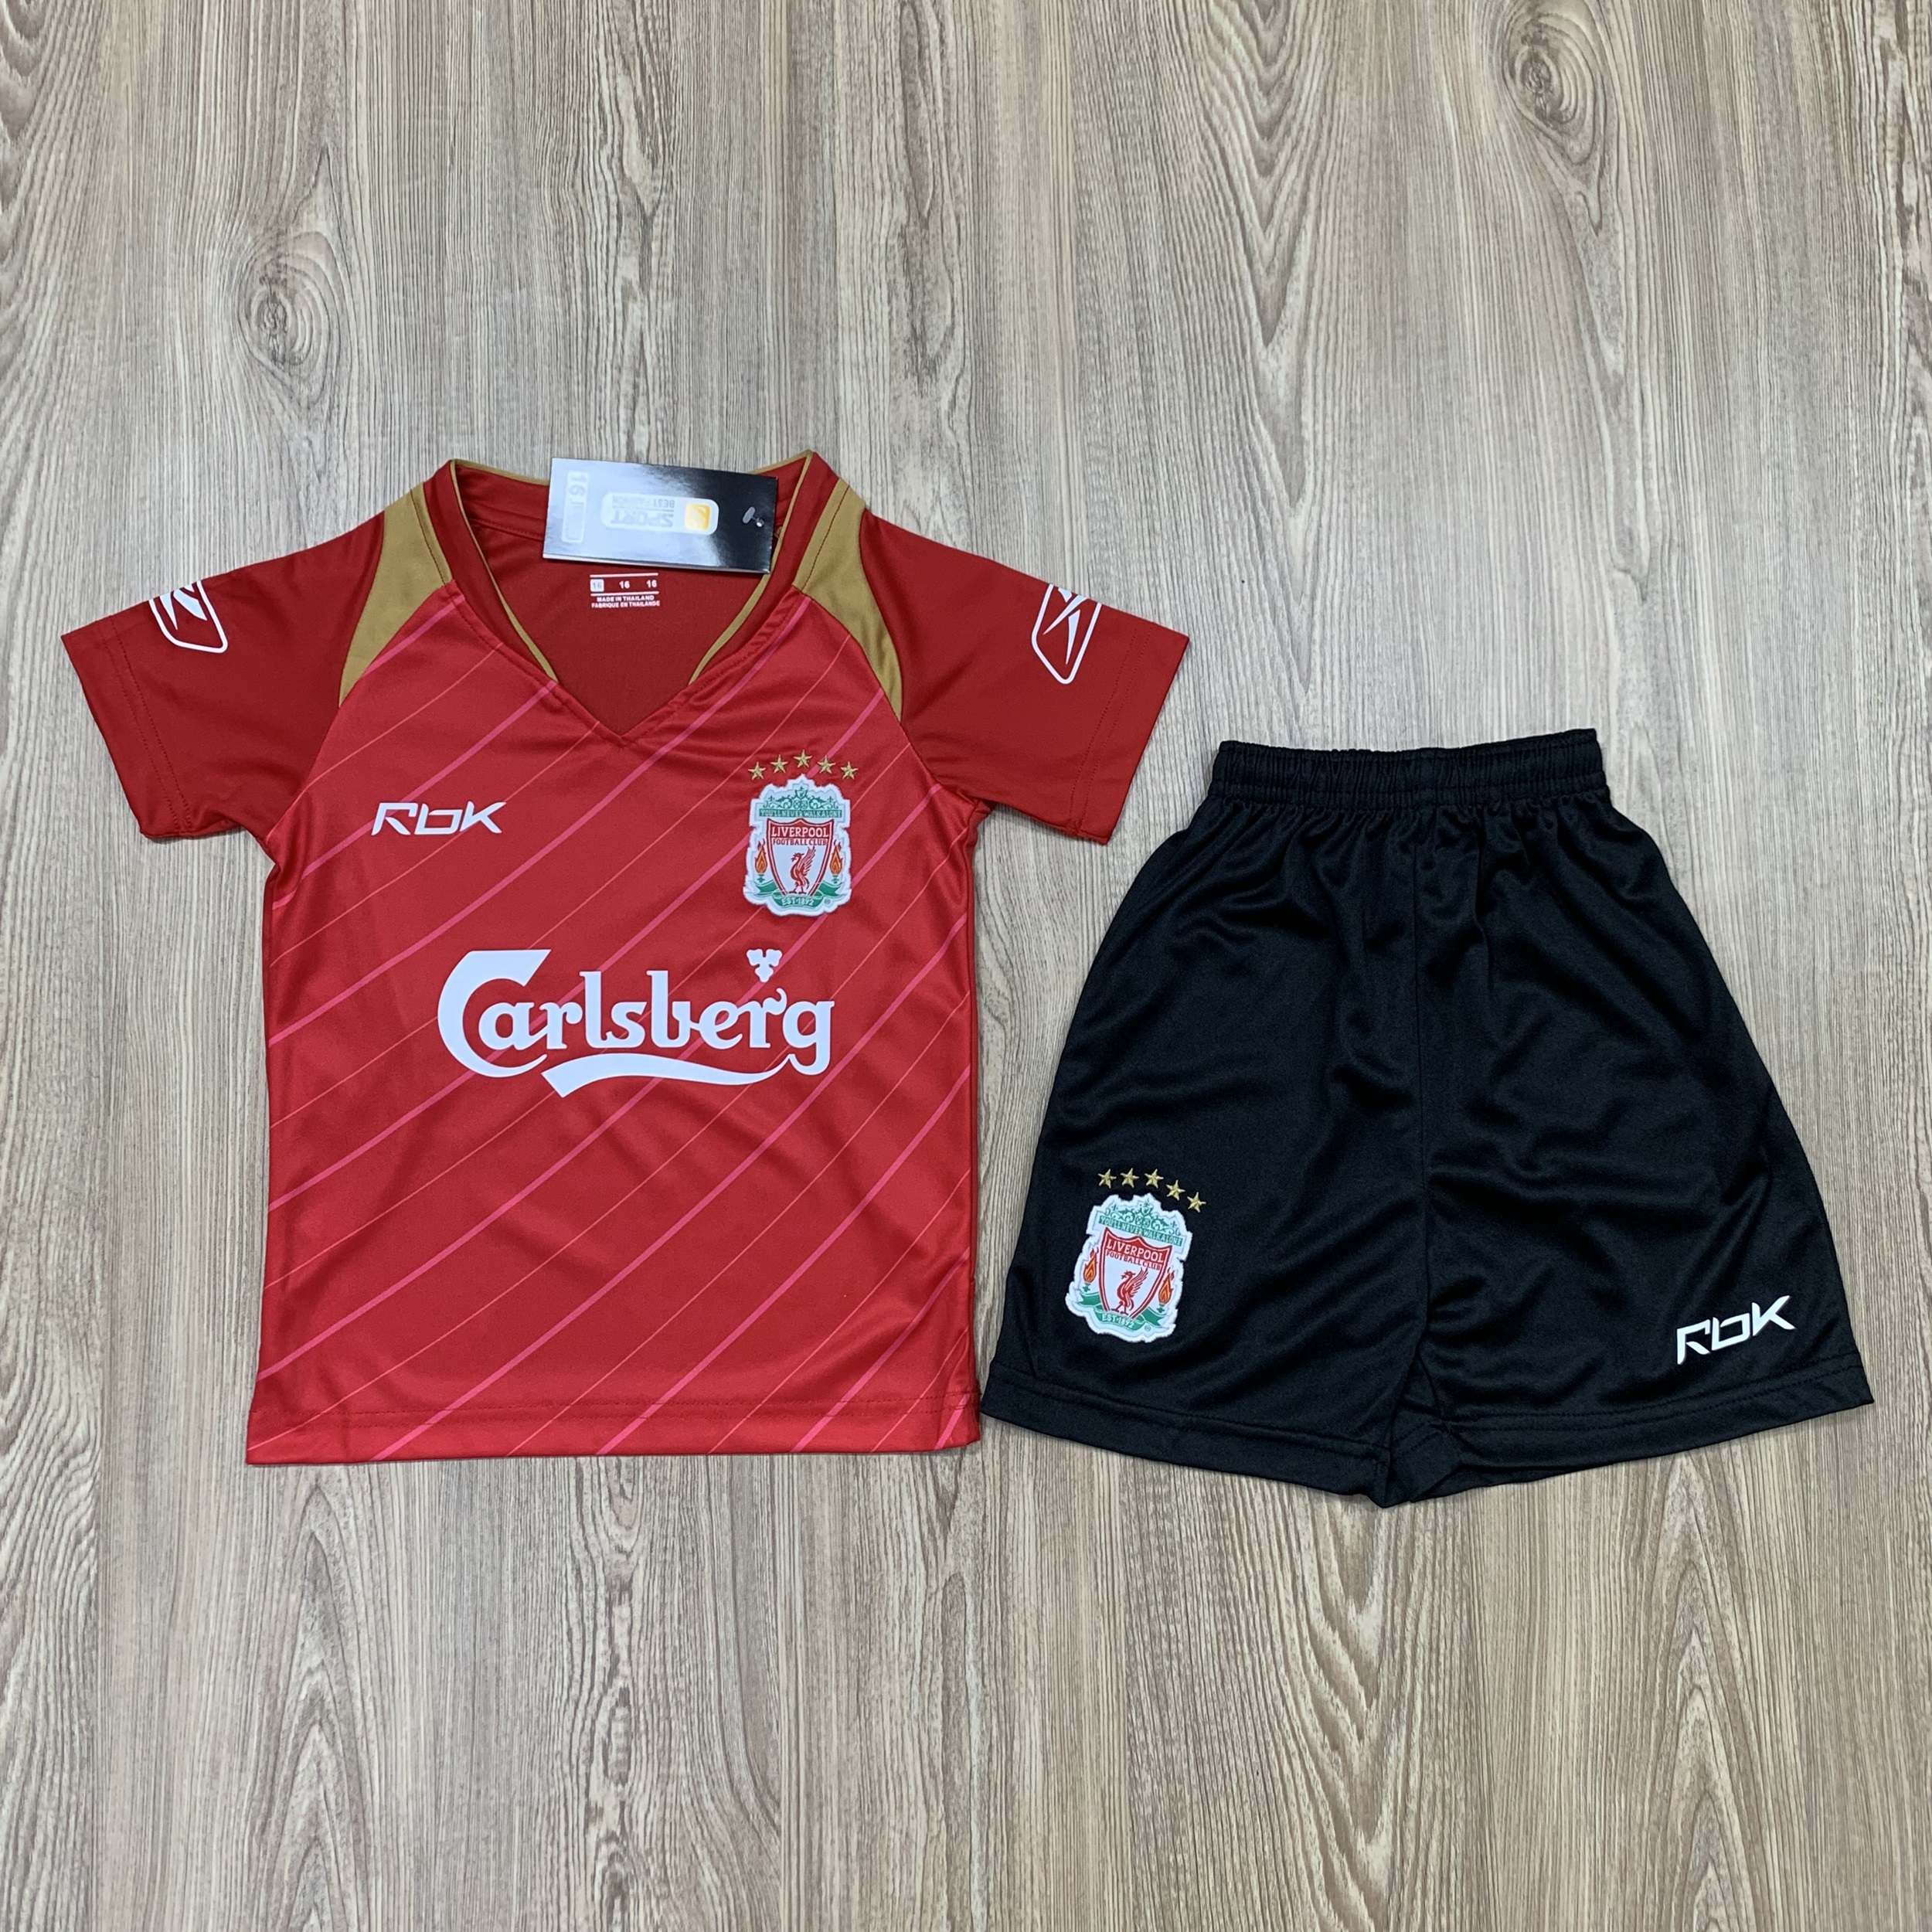 ชุดบอลเด็ก Liverpool ชุดกีฬาเด็ก ทีมลิเวอร์พูล ซื้อครั้งเดียวได้ทั้งชุด (เสื้อ+กางเกง) ตัวเดียวในราคาส่ง สินค้าเกรด-A